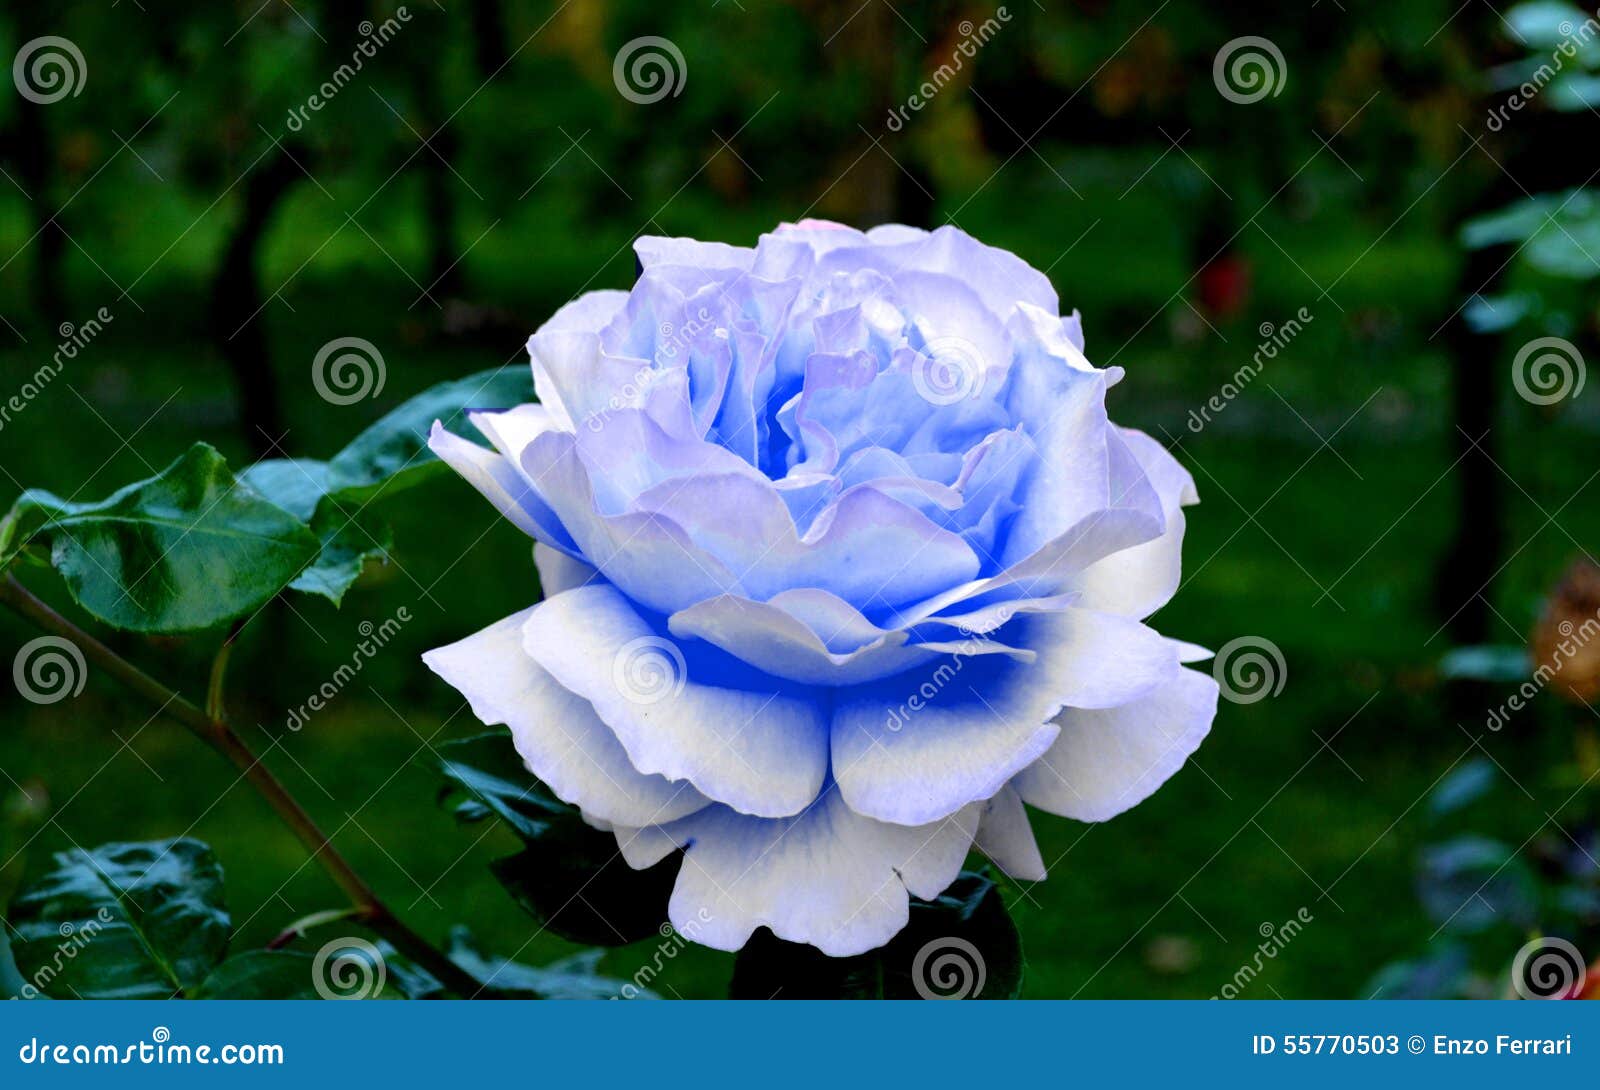 Μπλε αυξήθηκε στον κήπο μου. Η ομορφιά ενός μπλε αυξήθηκε δεν έχει κανέναν ίσο οπουδήποτε στον κόσμο